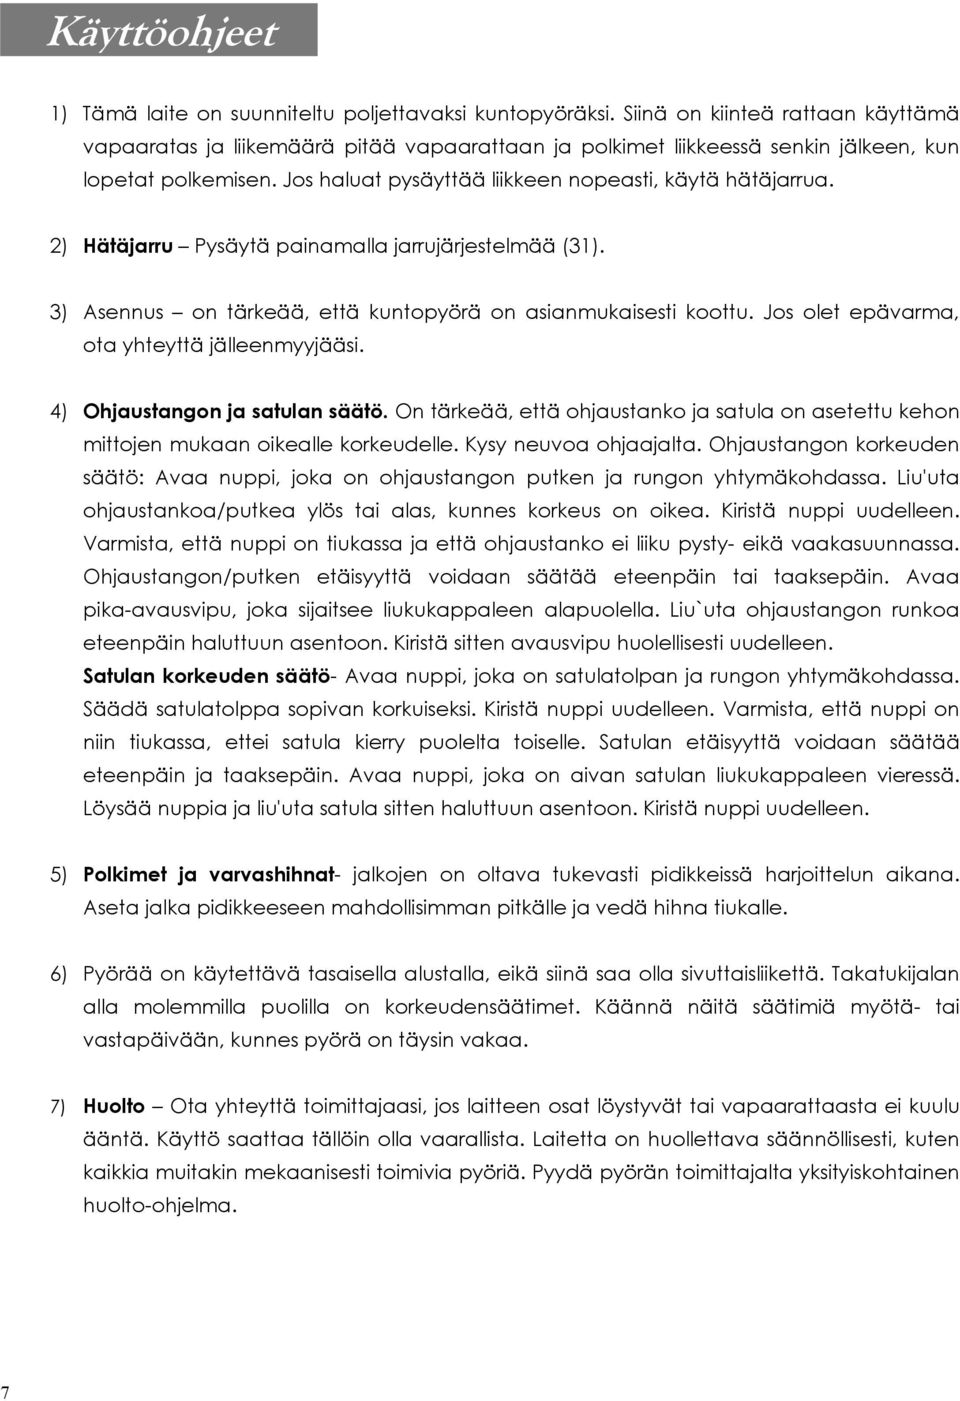 HIHNALLINEN KUNTOPYÖRÄ KÄYTTÖOHJE - PDF Free Download